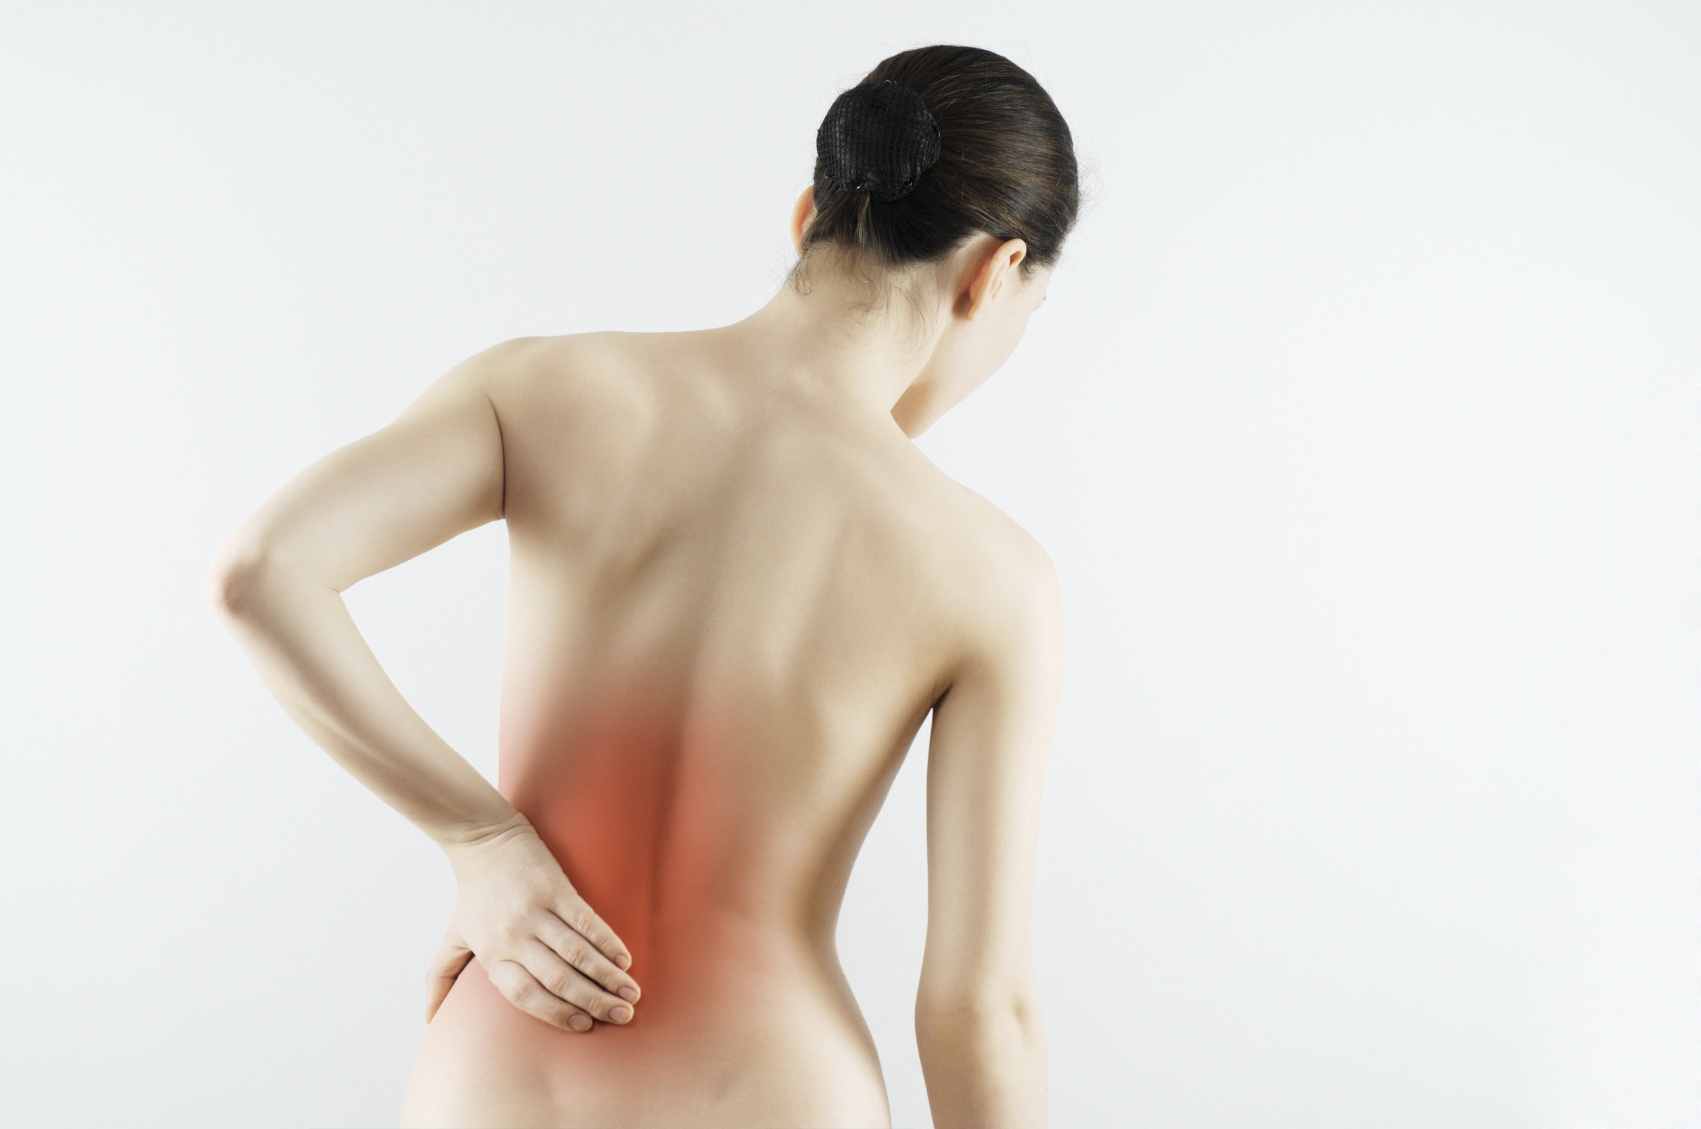 В медицине, прострел в пояснице будет называться люмбаго, состояние, которое характеризуется внезапным появлением боли в нижней части спины